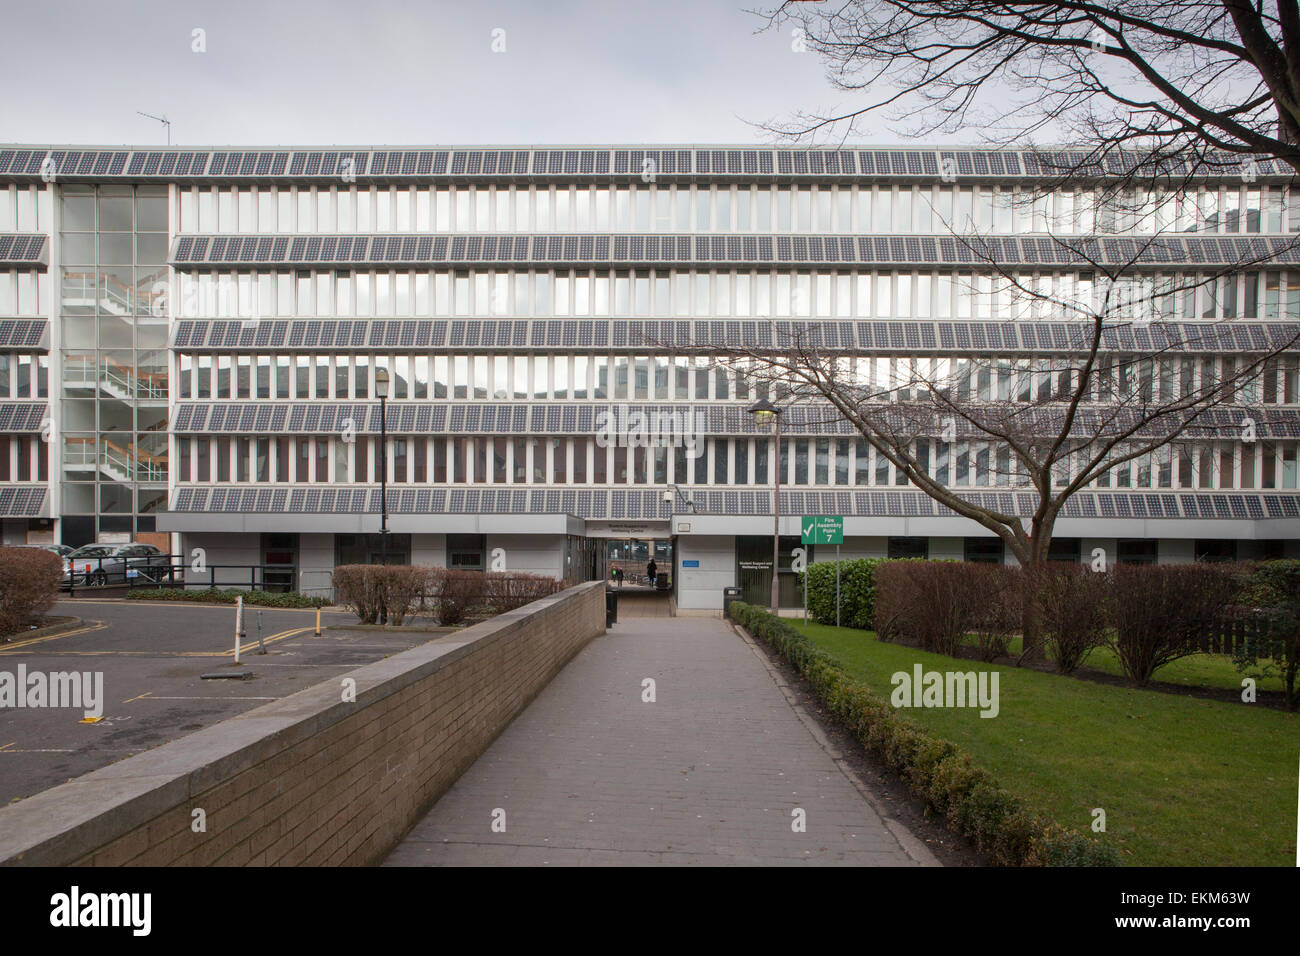 Un bâtiment à l'Université de Northumbria recouvert de panneaux solaires. Newcastle sur Tyne, Royaume-Uni Banque D'Images